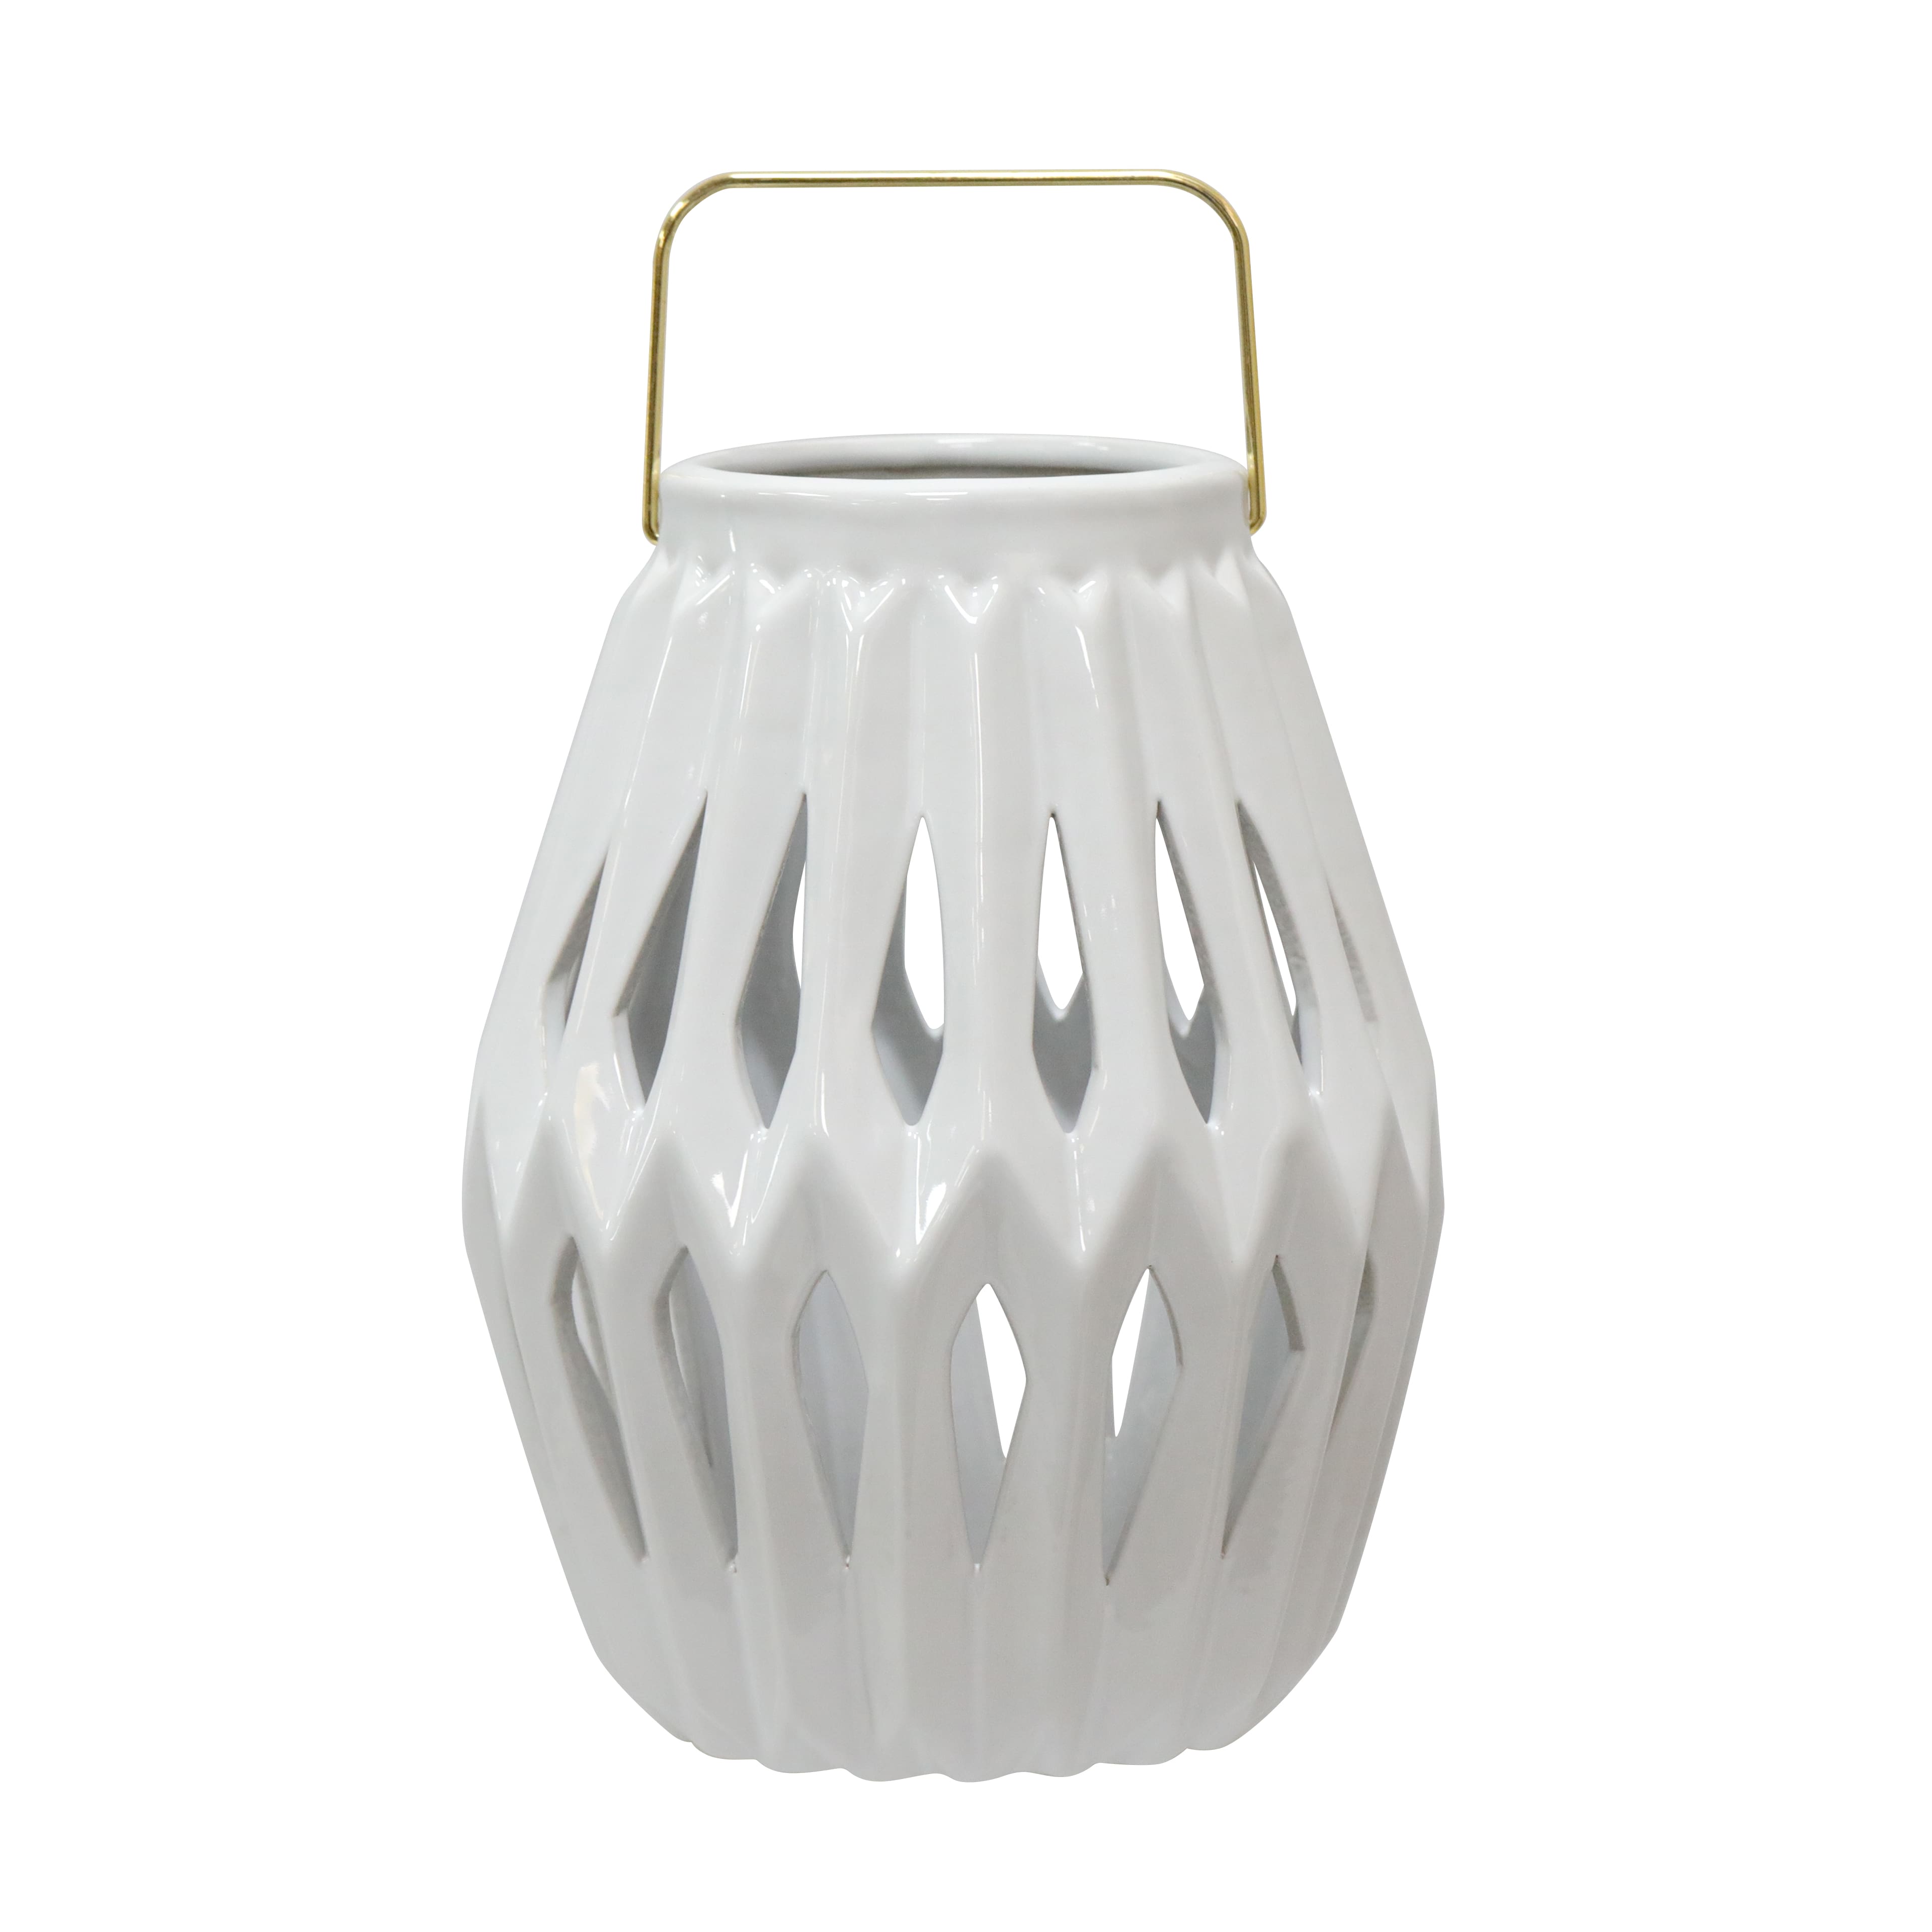 Joy Hope Believe NWOT Lantern With Handle White Ceramic 